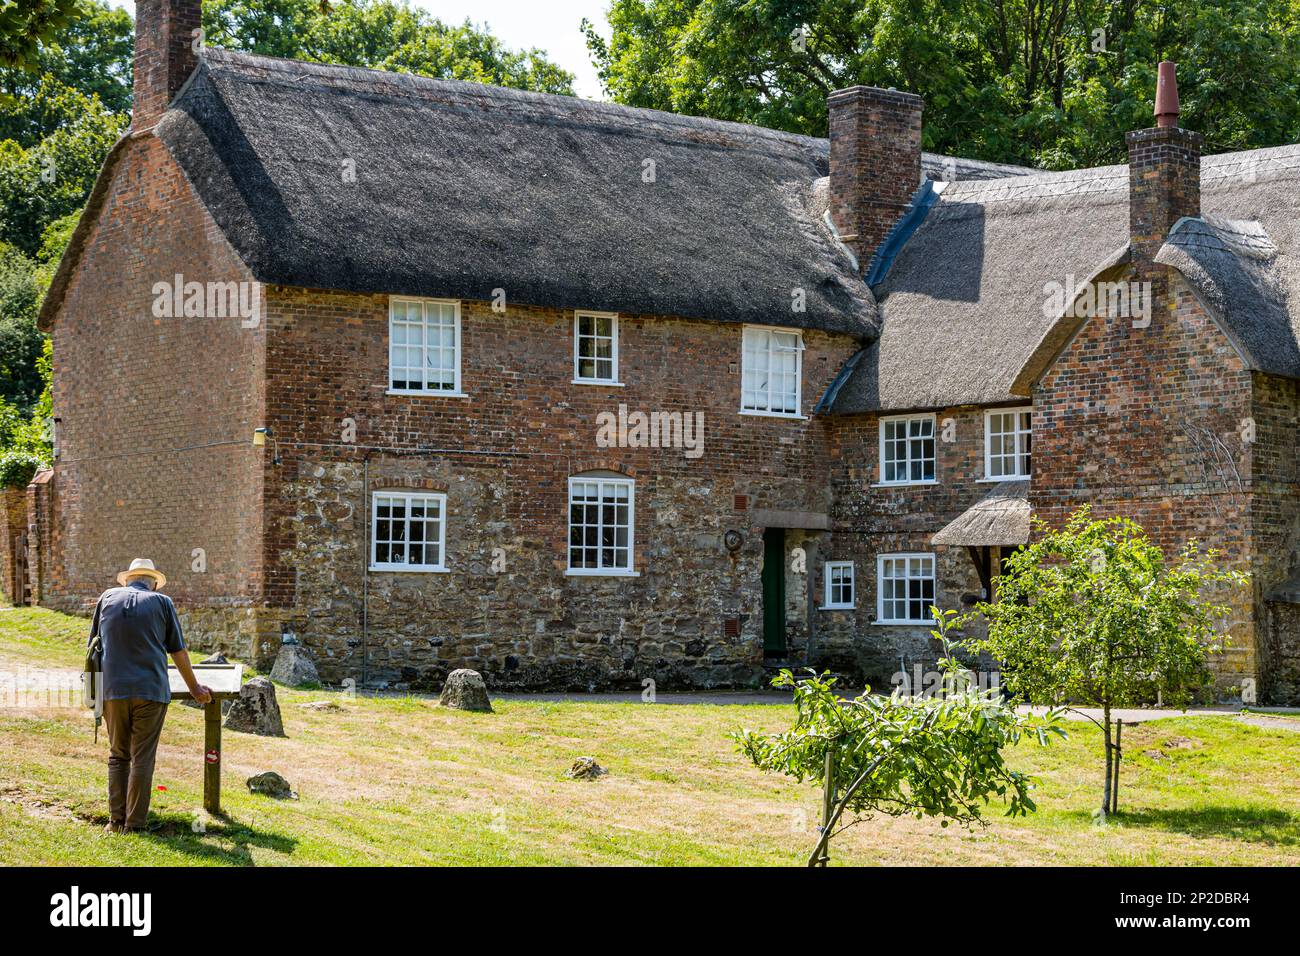 Pittoresque maison en toit de chaume, St Gabriel's Cottages, Morcombelake, Dorset, Angleterre, ROYAUME-UNI Banque D'Images